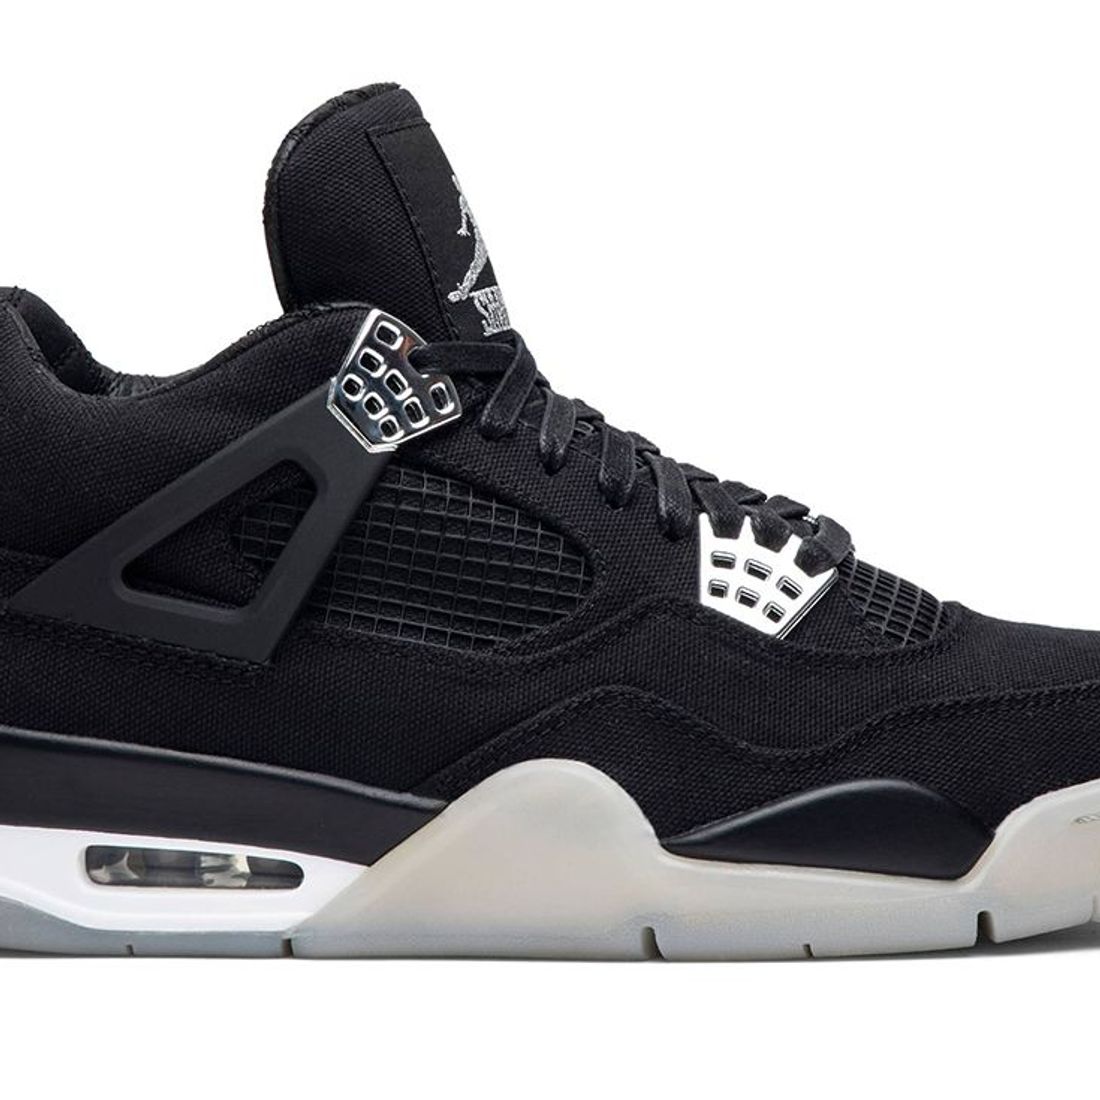 Nike Air Jordan 4 'Black Cat' - Exclusive Sneakers SA